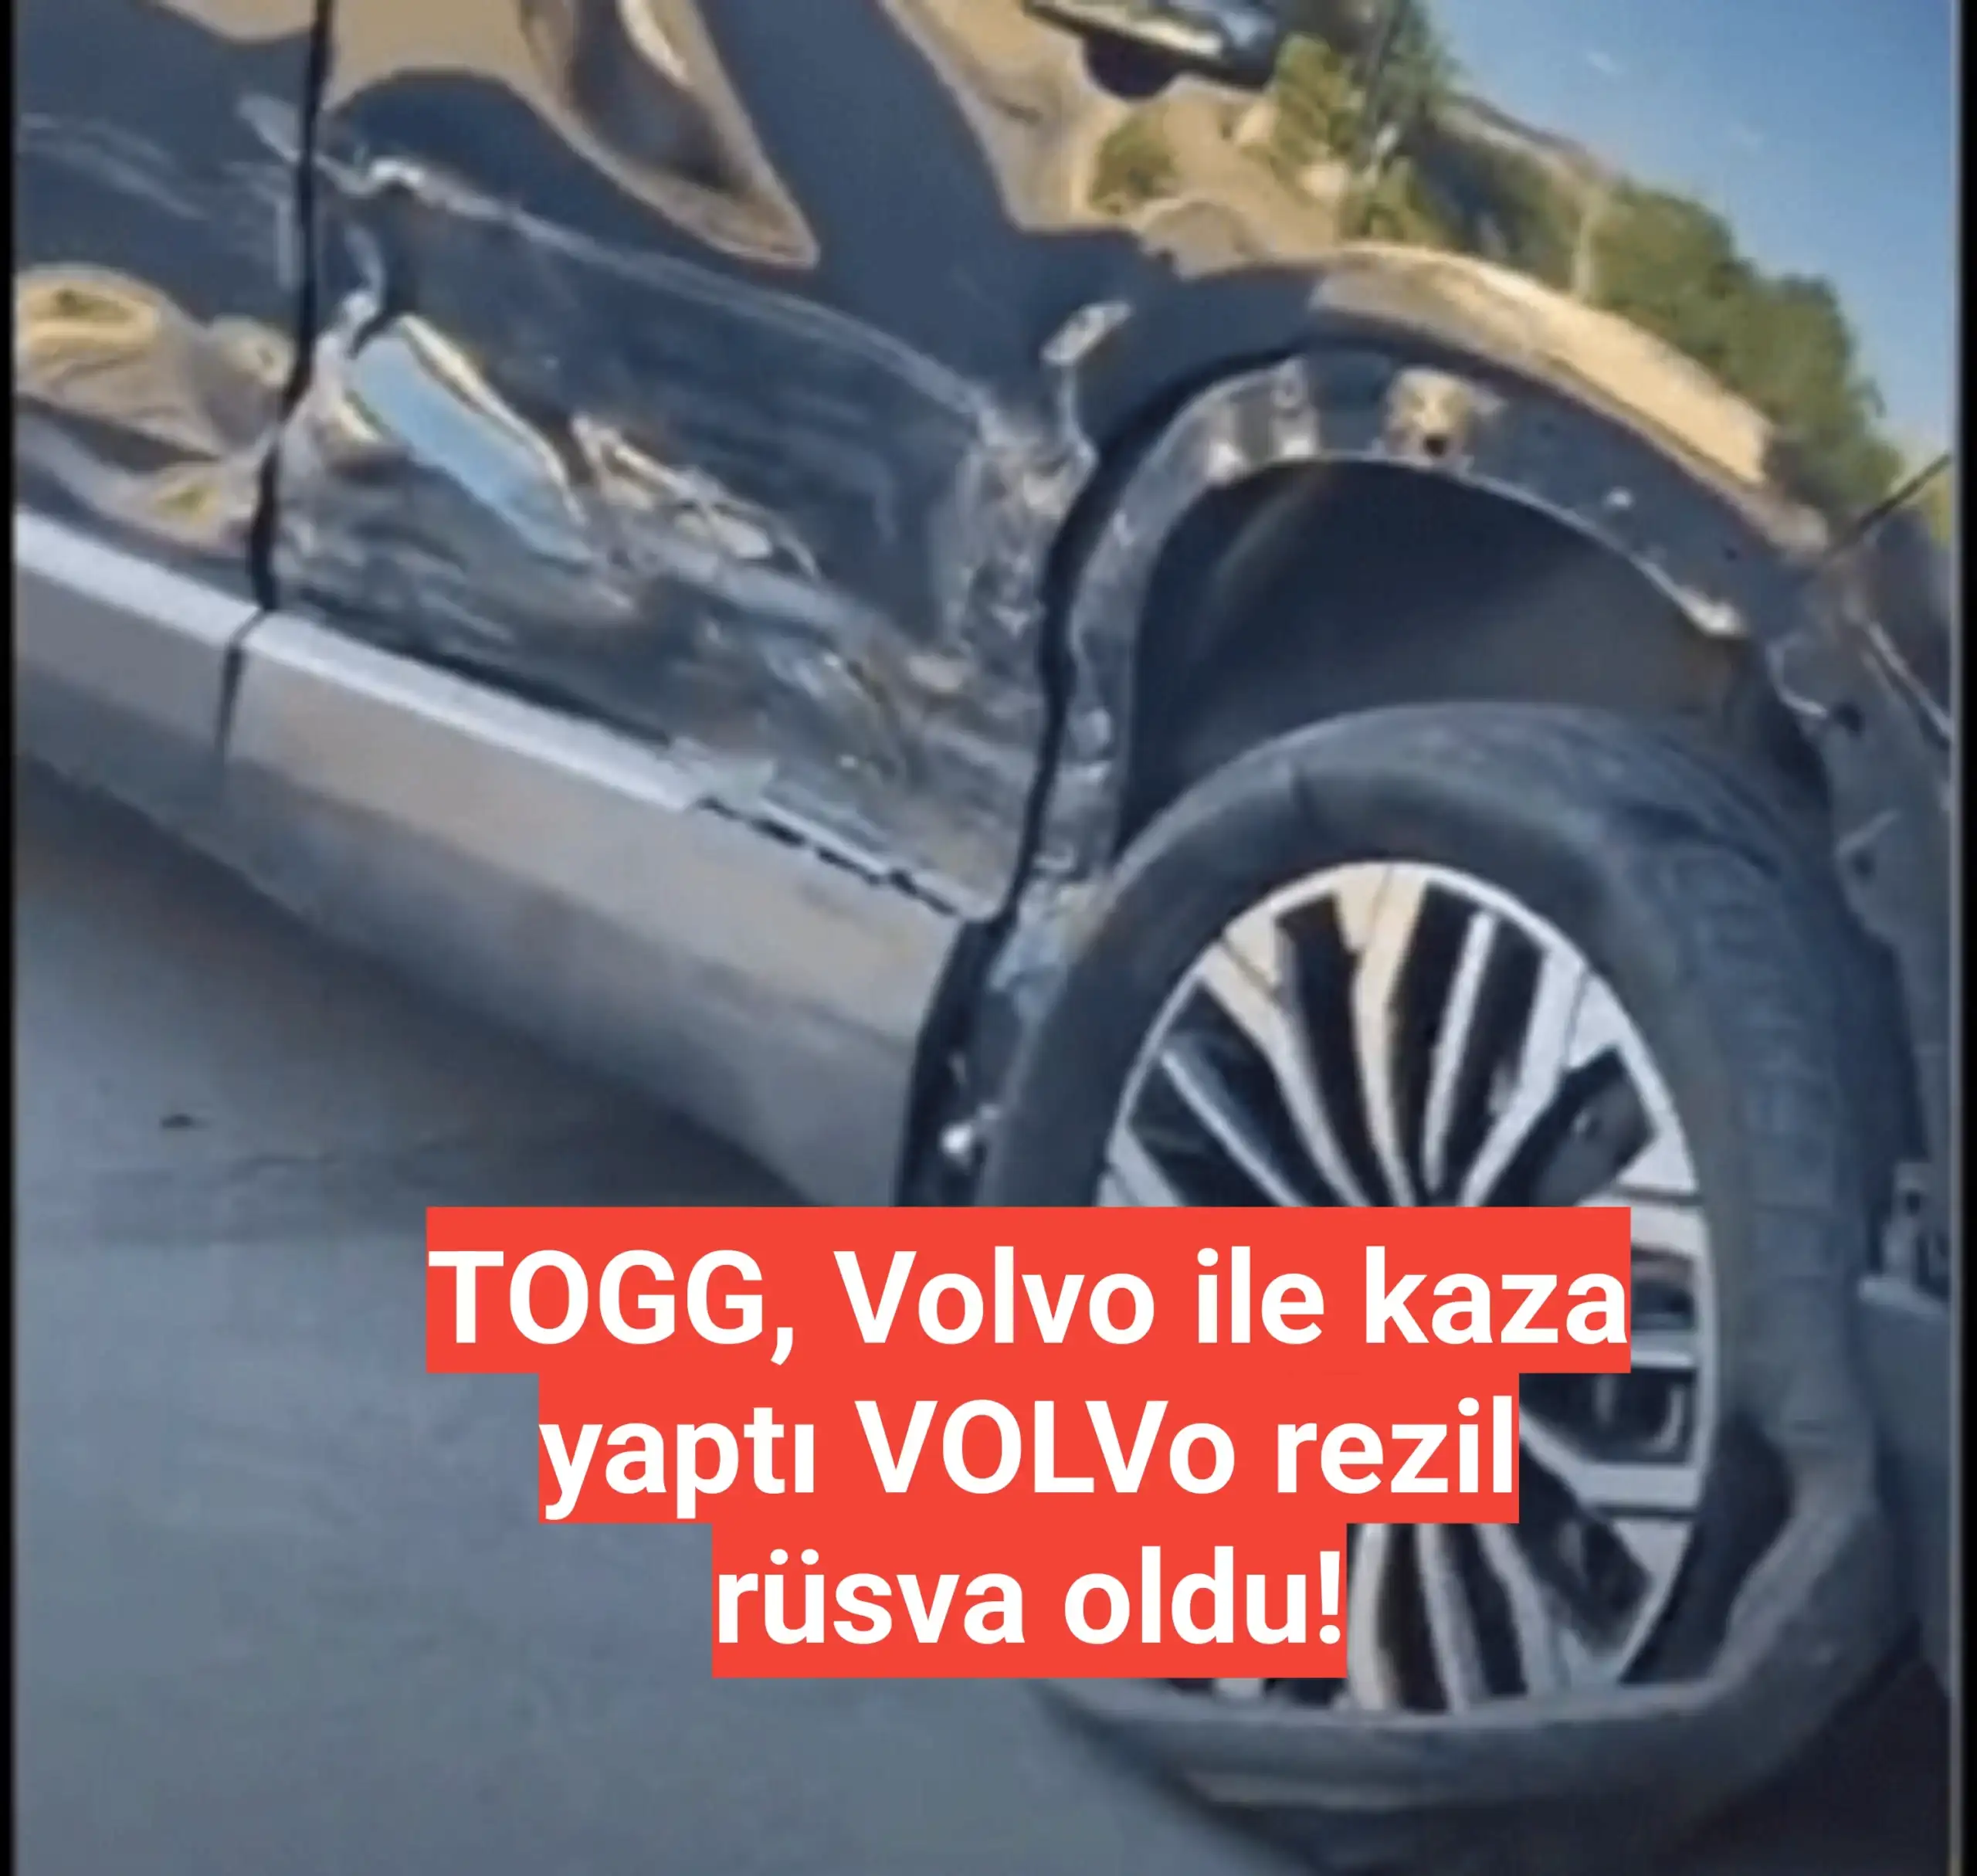 TOGG, Volvo ile kaza yaptı VOLVo rezil rüsva oldu!